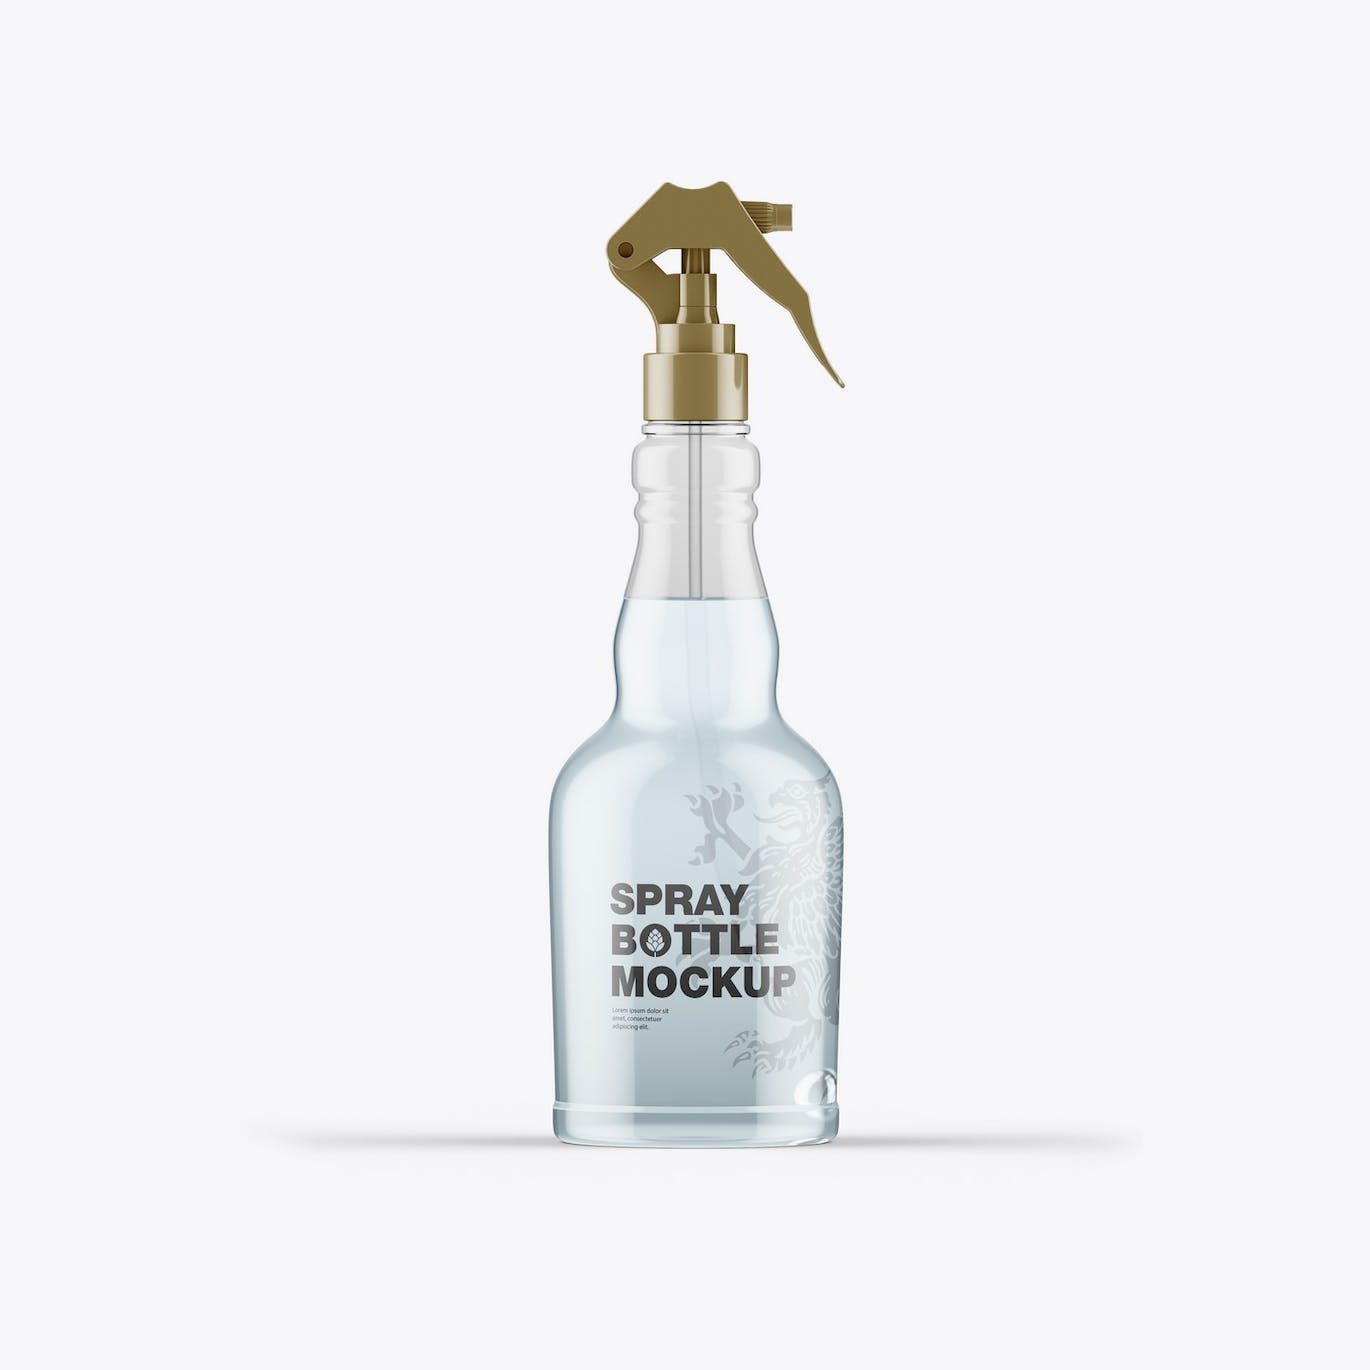 按压玻璃喷雾瓶瓶身设计样机 Set Different Glass Spray Bottles Mockup 样机素材 第3张